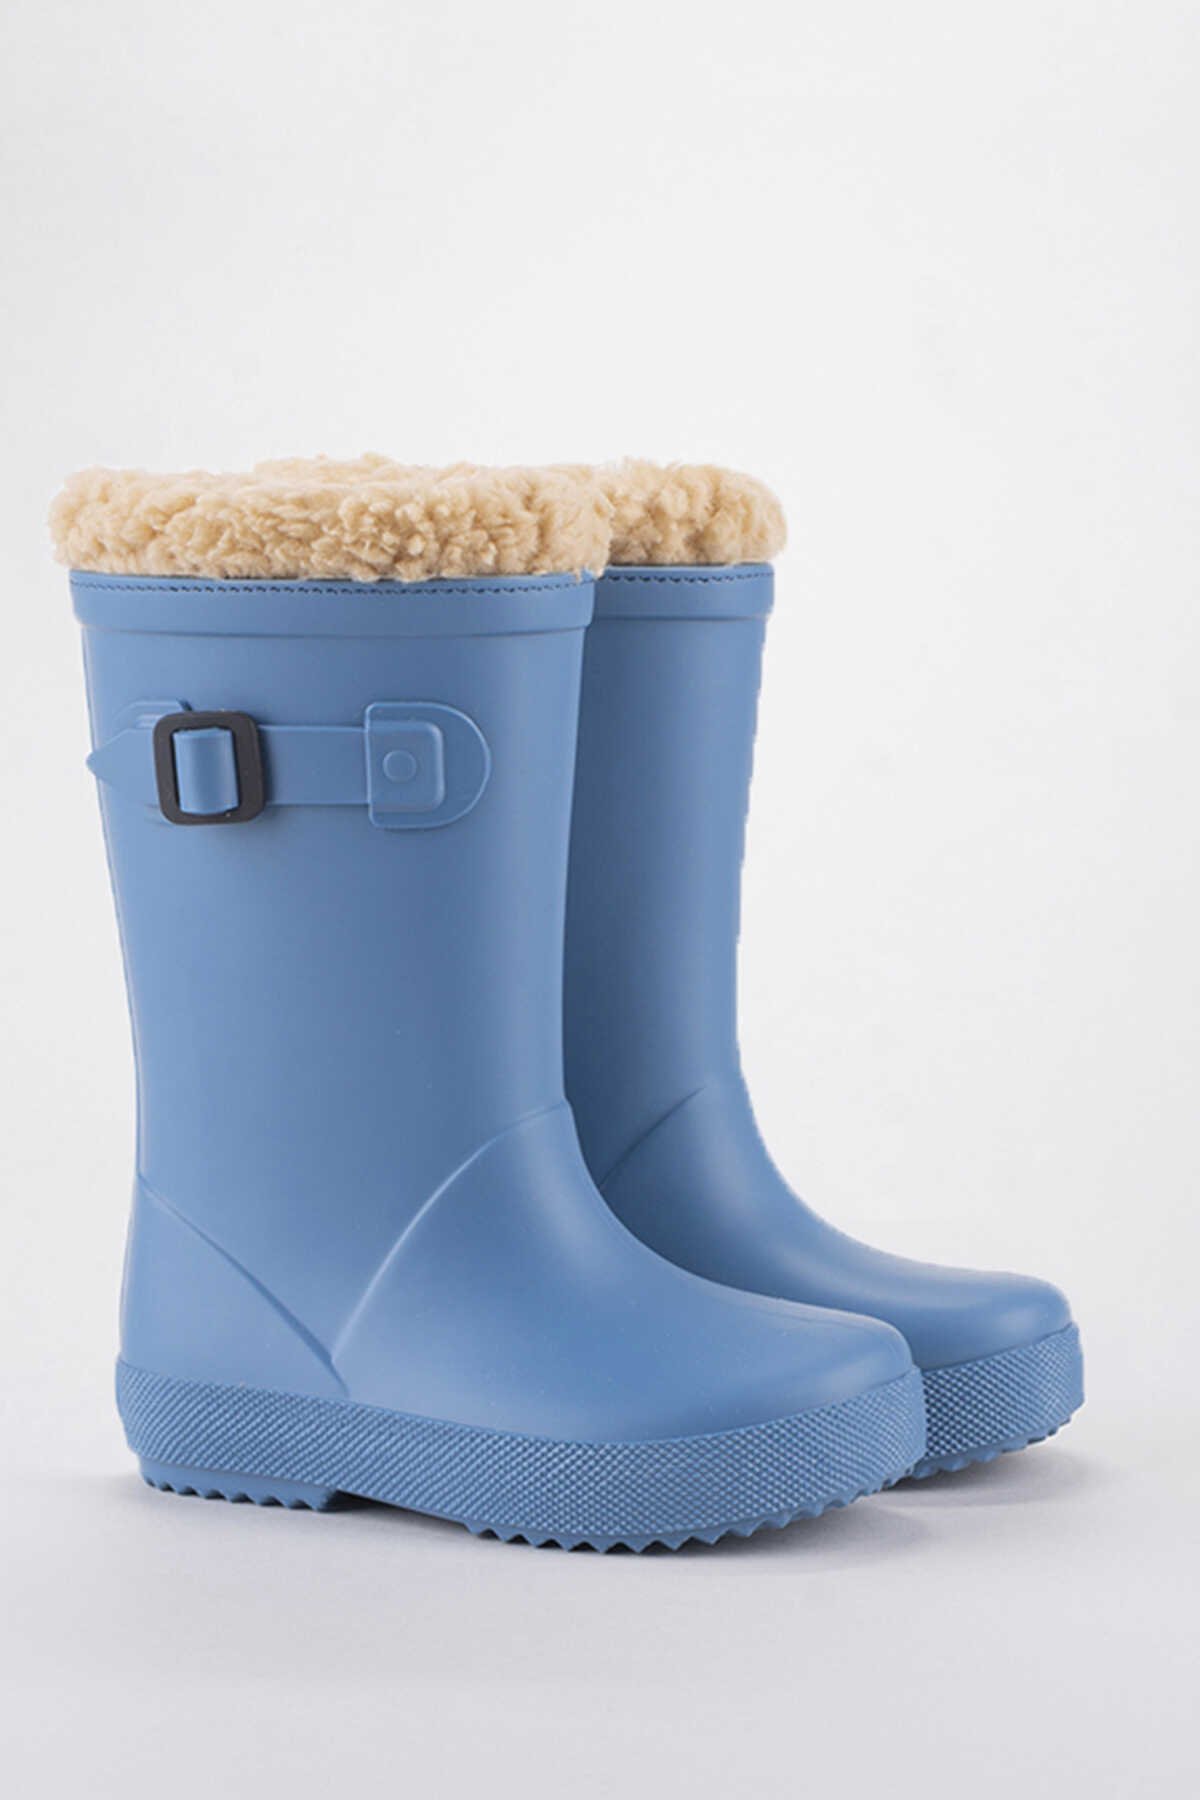 Igor - Igor SPLASH EURI BORREGUITO Yağmur Çizmesi Unisex Çocuk Ayakkabı Açık Mavi